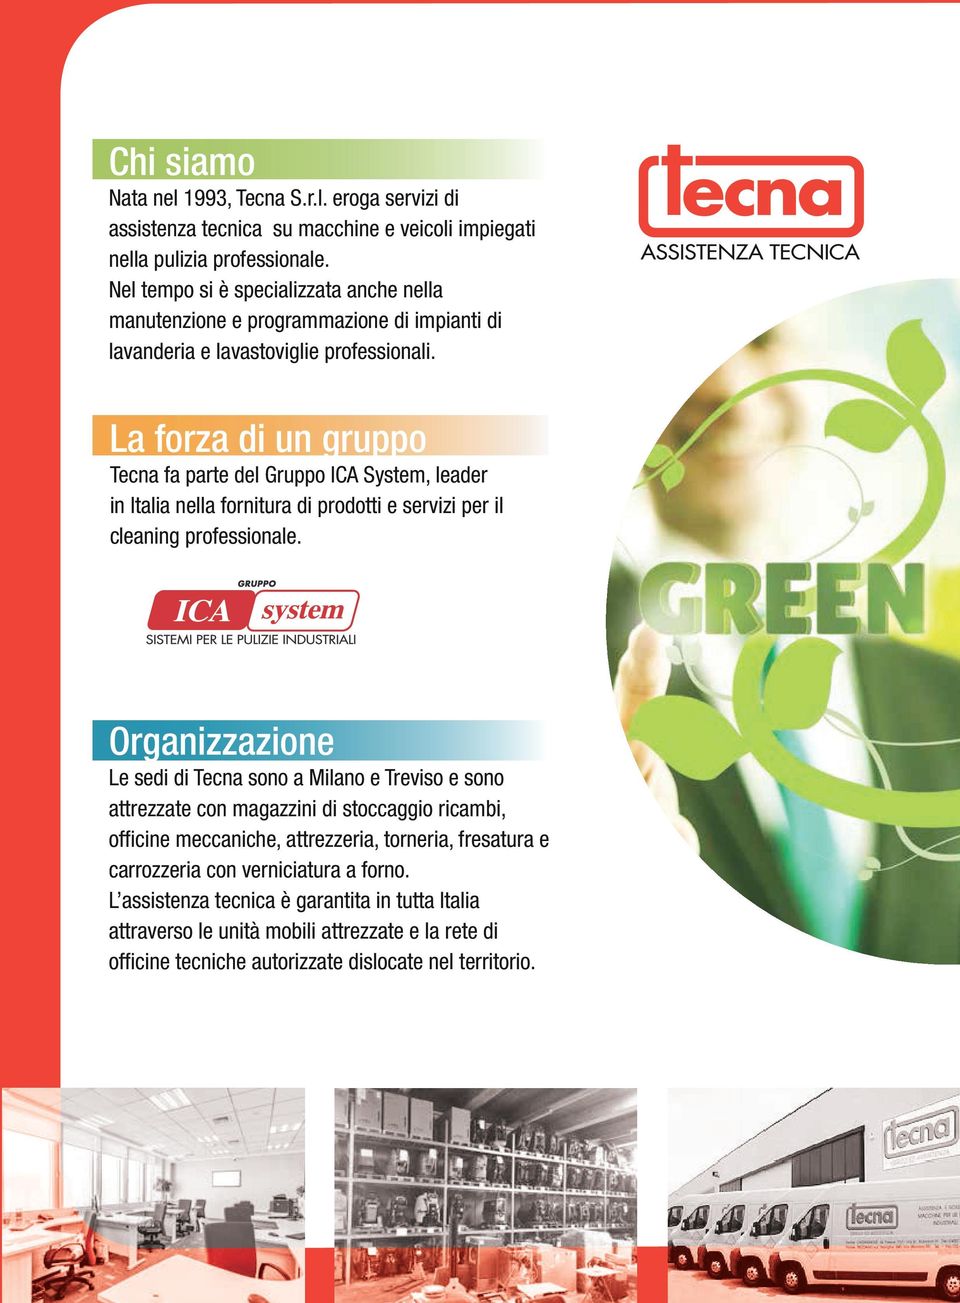 NUOVO LOGO - SENZA CONTORNO - con T allungata La forza di un gruppo Tecna fa parte del Gruppo ICA System, leader in Italia nella fornitura di prodotti e servizi per il cleaning professionale.